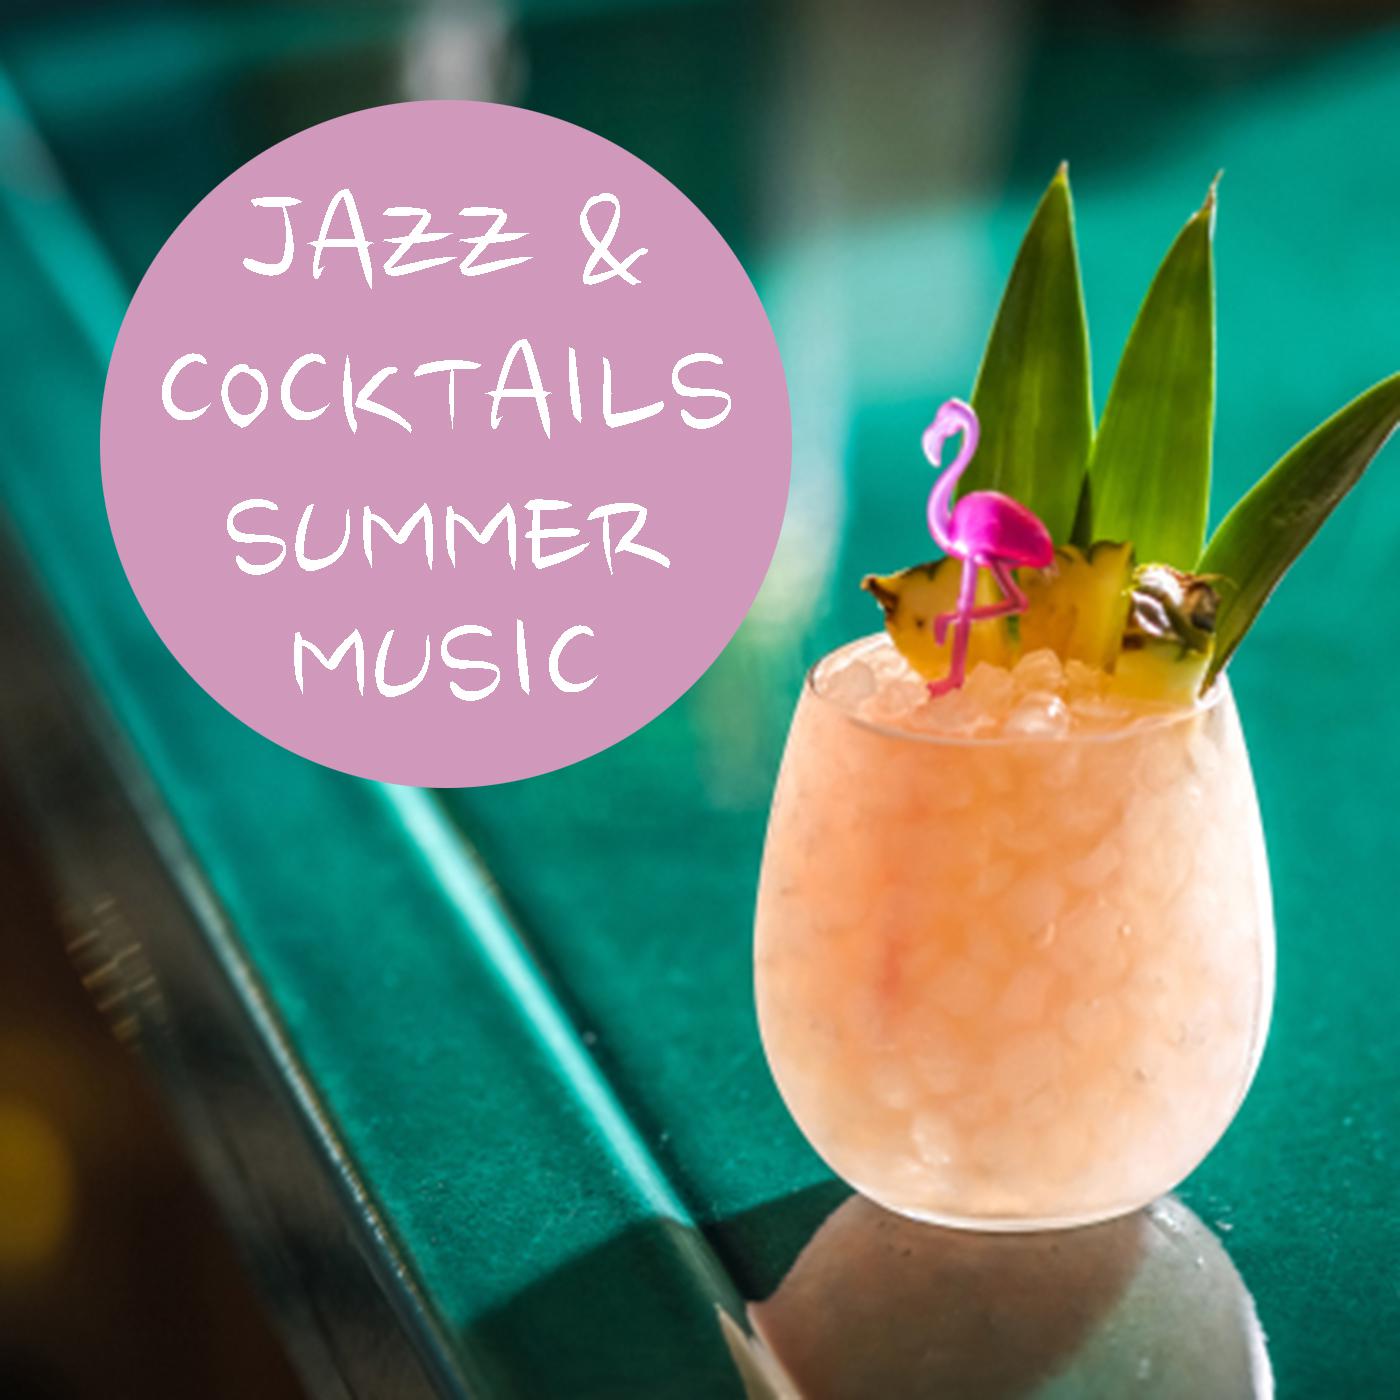 Jazz & Cocktails Summer Music